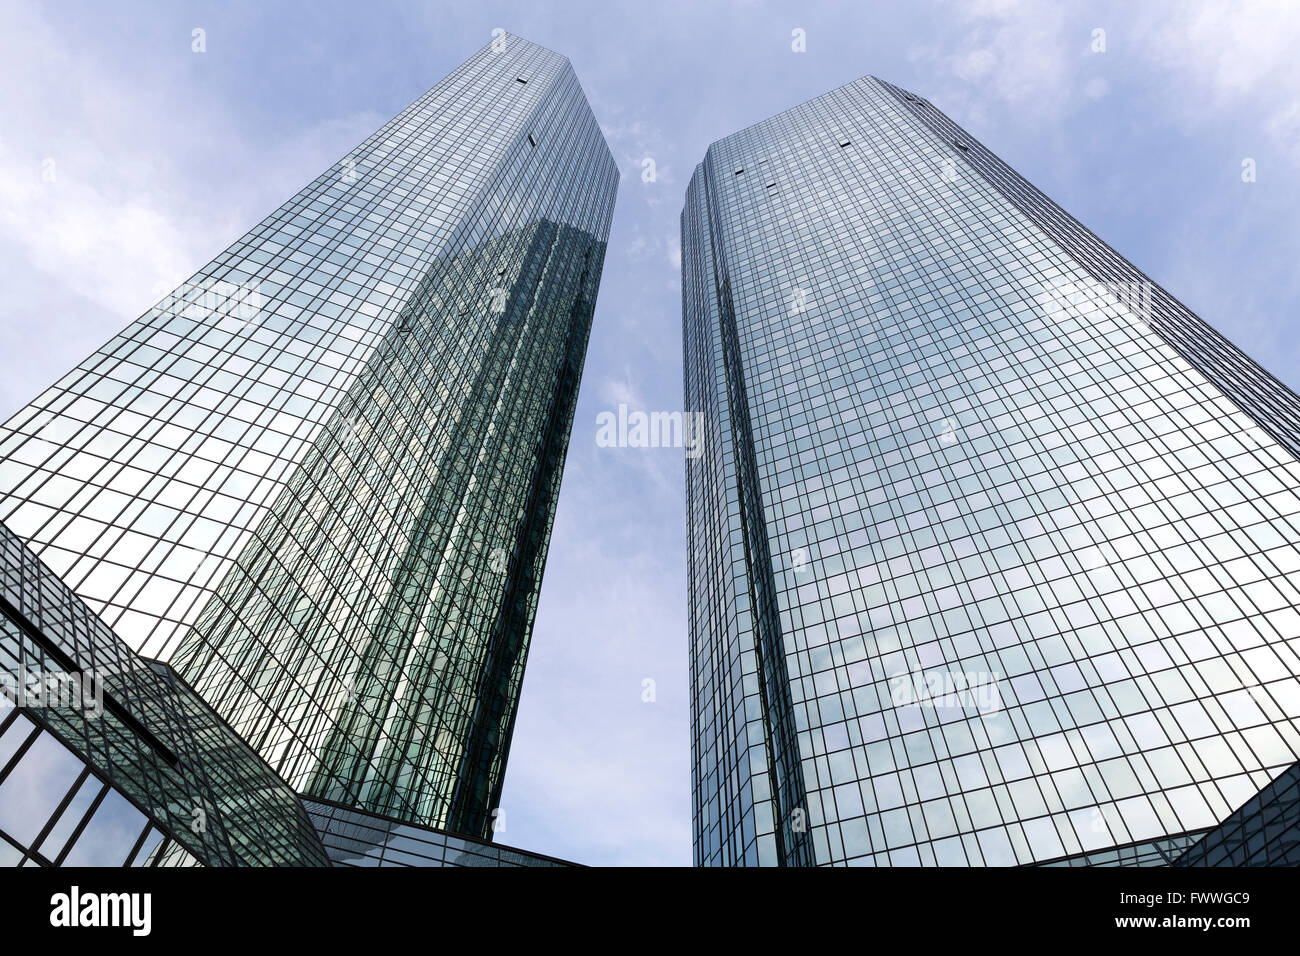 Siège de la Deutsche Bank, en miroir hautes tours, Frankfurt am Main, Hesse, Allemagne Banque D'Images